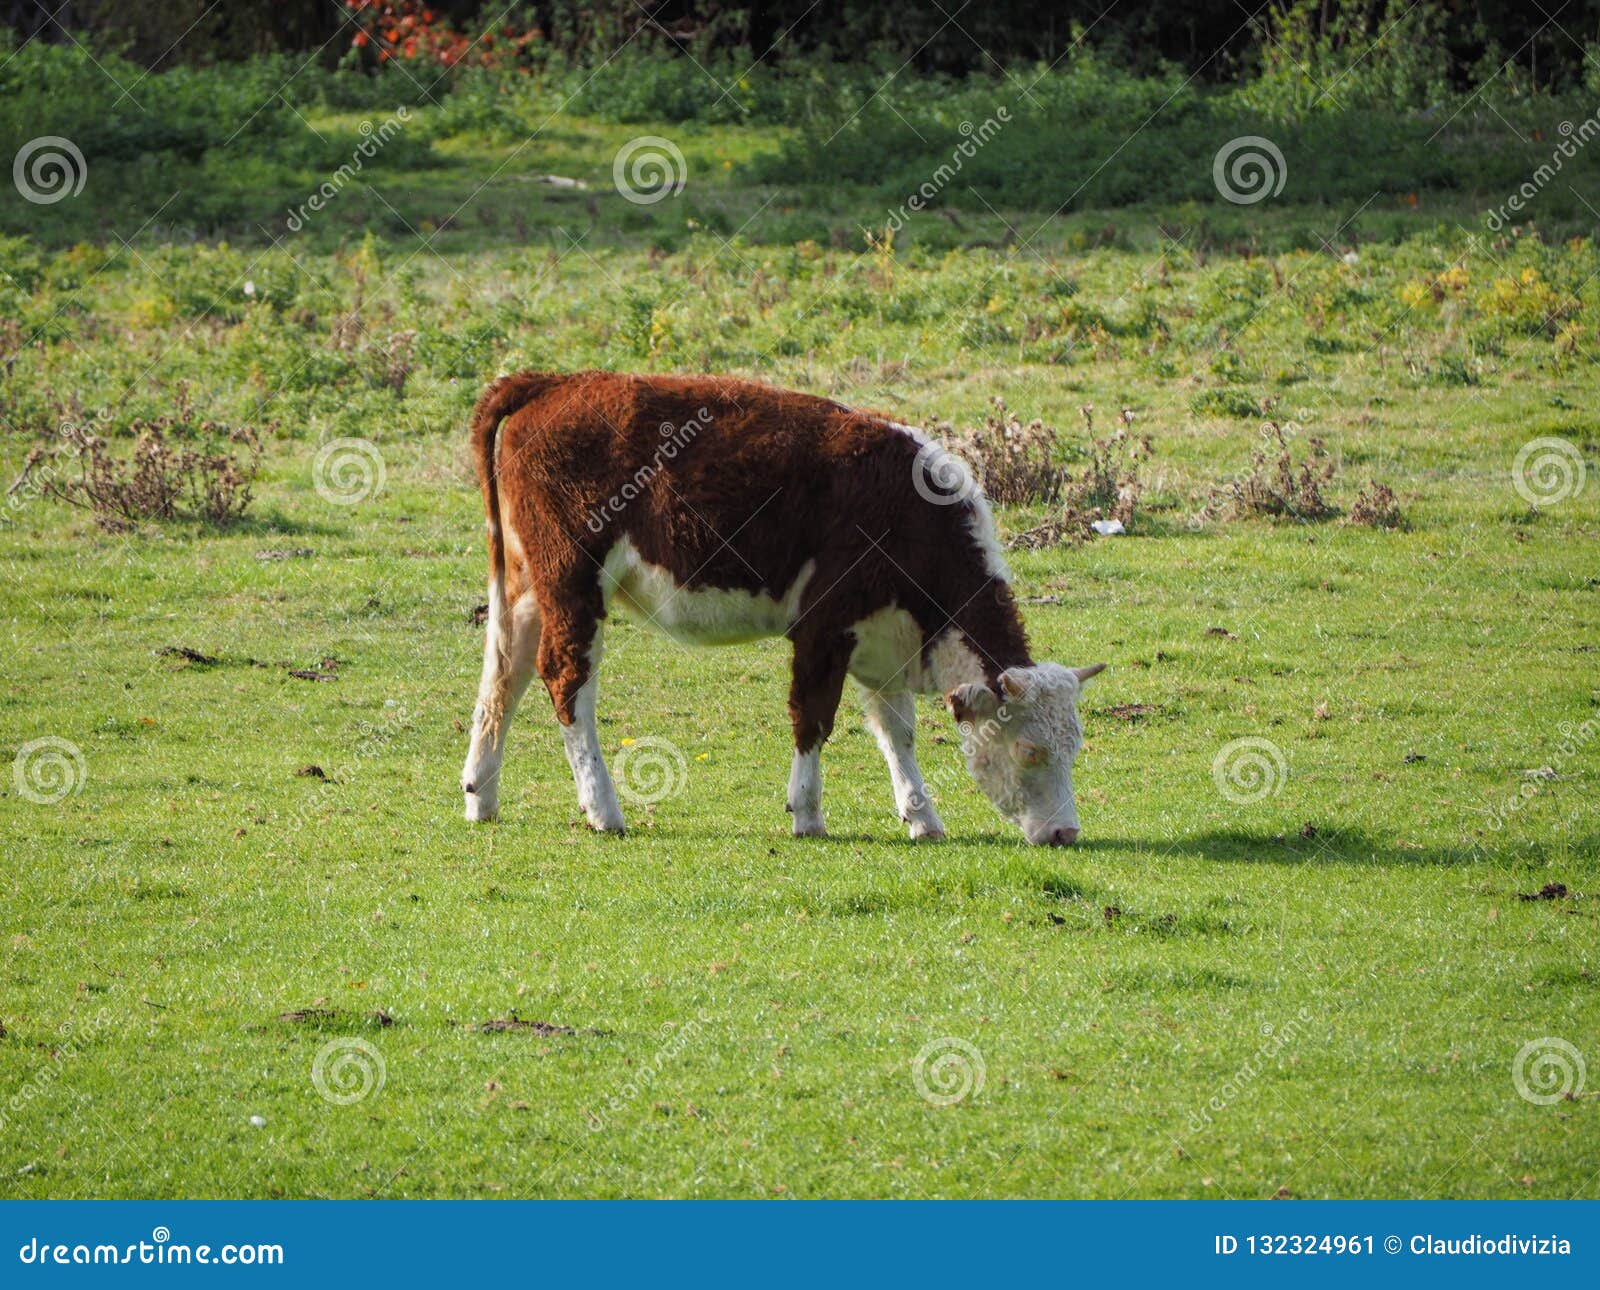 coe fen meadowland cattle in cambridge